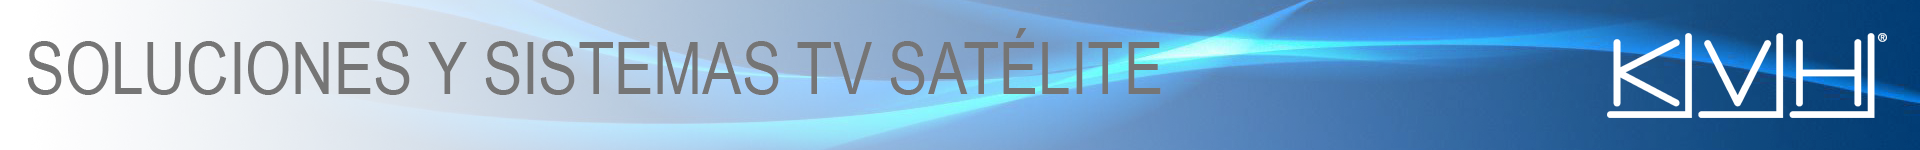 Televisión Satélite